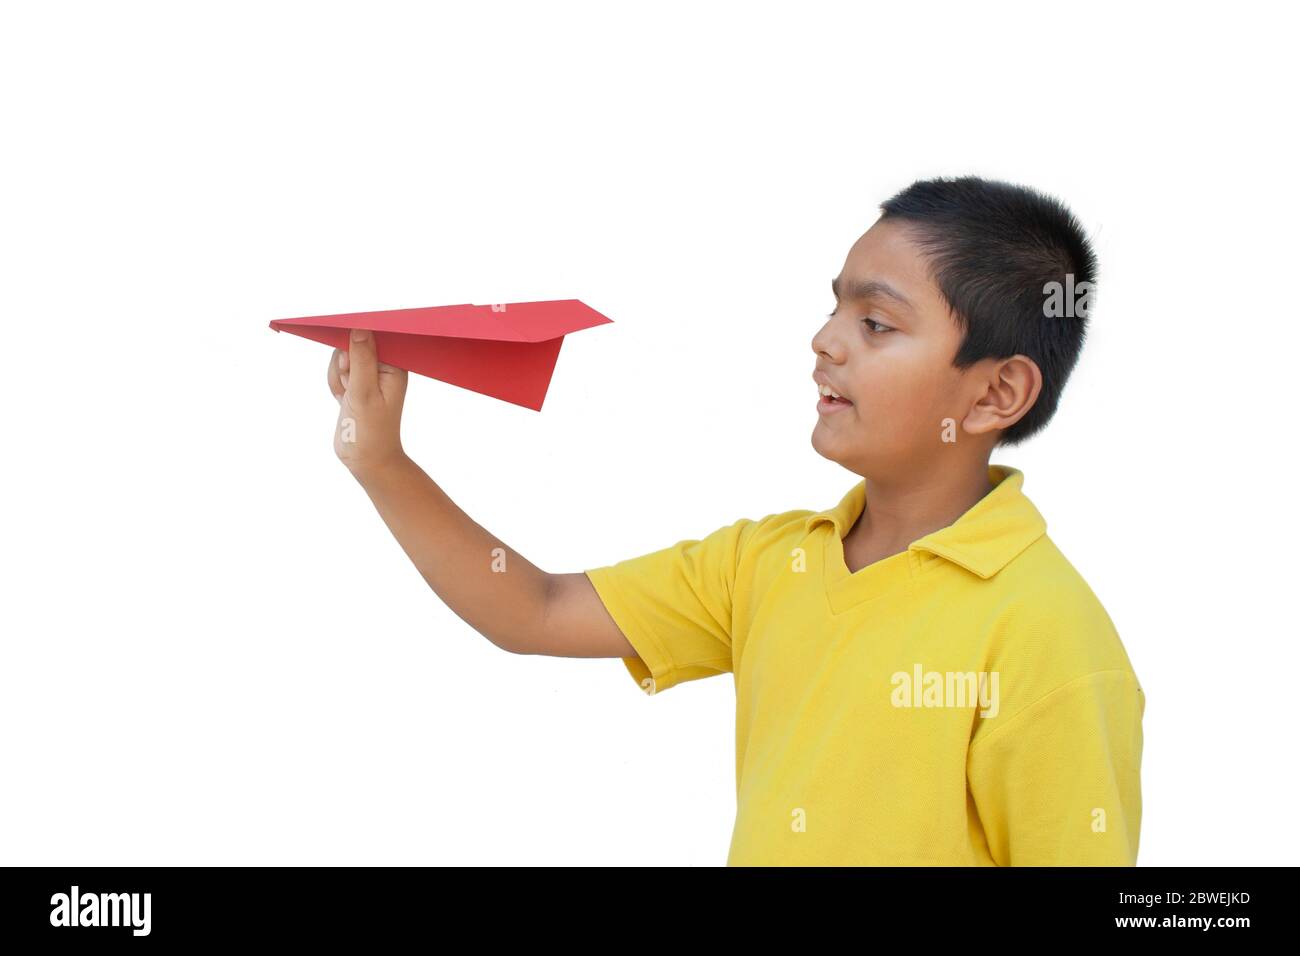 Jungen spielen mit einem Papierflieger und lächelnd Stockfoto